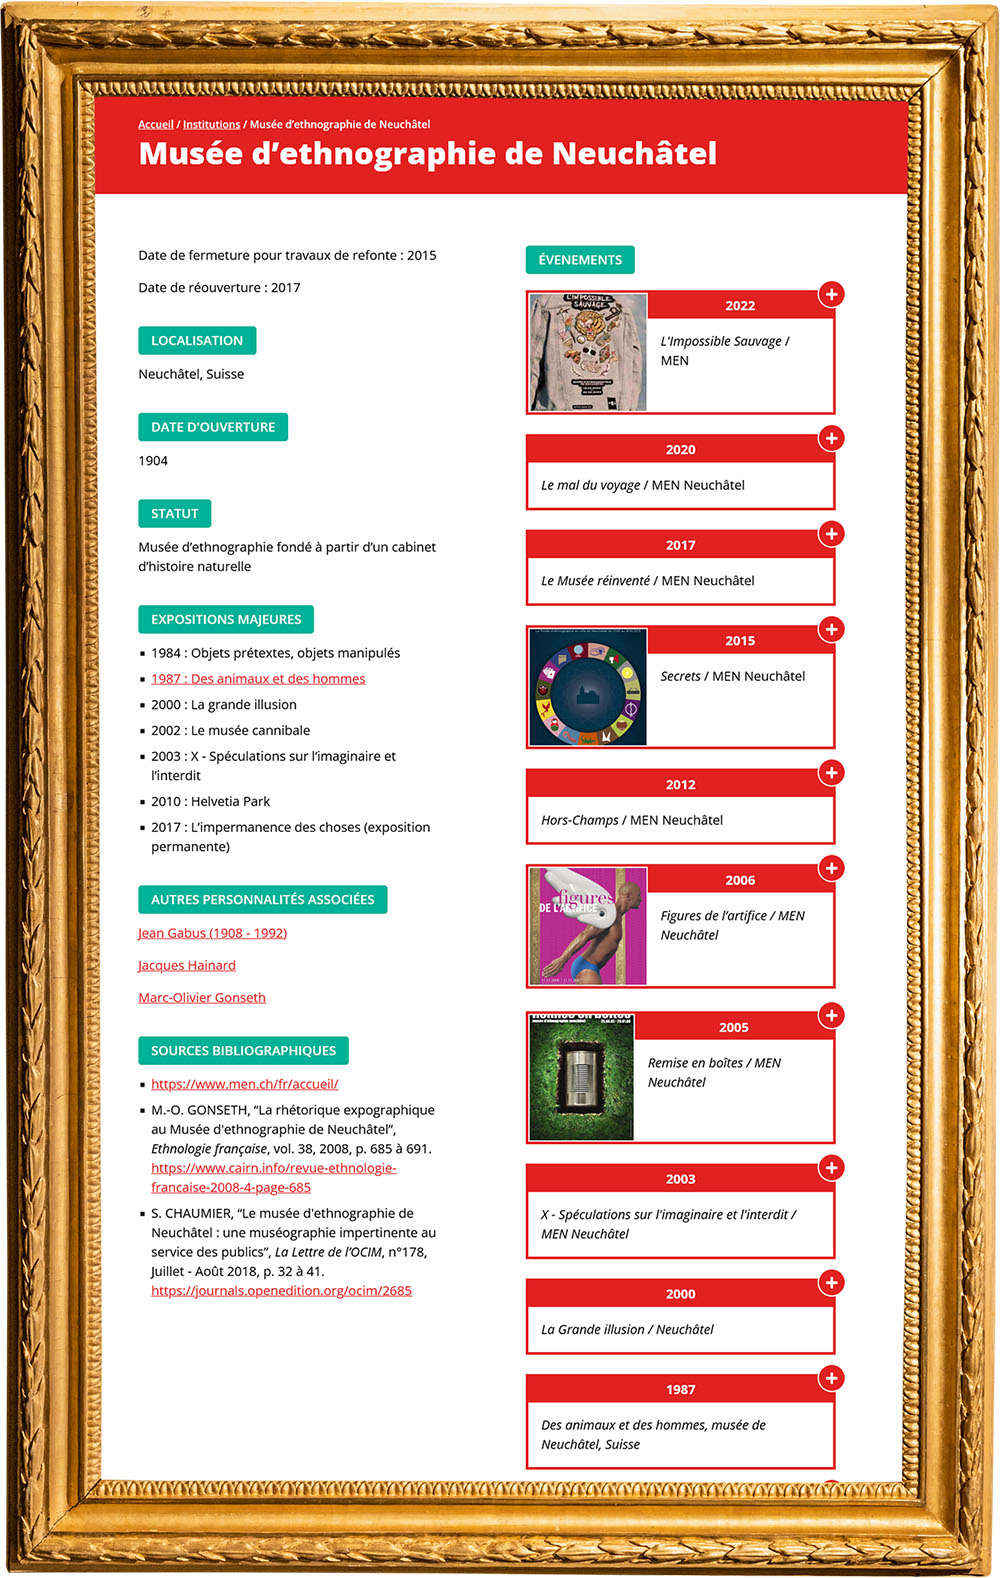 Web Muséocheck, développé par l'agence de communication Staminic